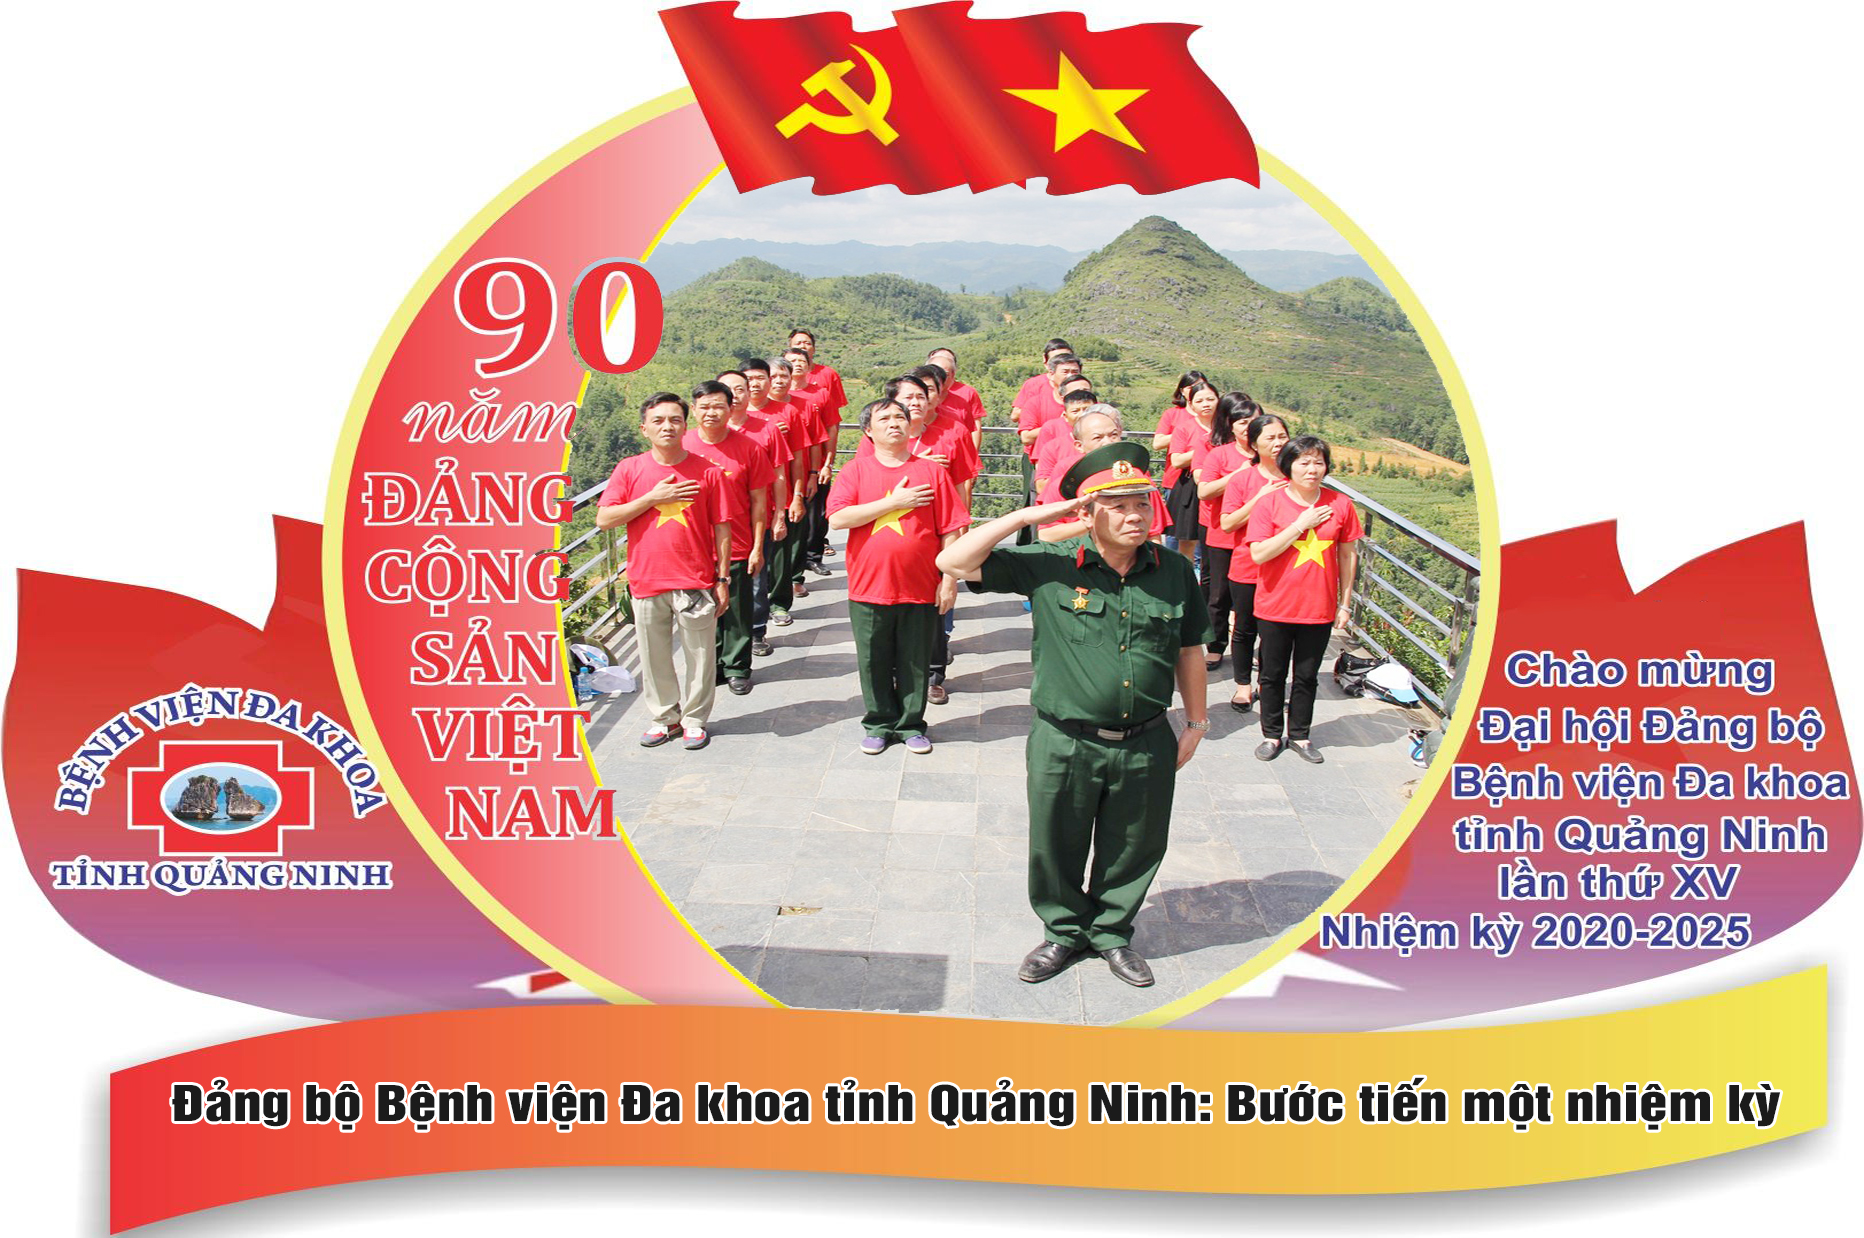 Đảng bộ Bệnh viện ĐK tỉnh Quảng Ninh: Bước tiến một nhiệm kỳ